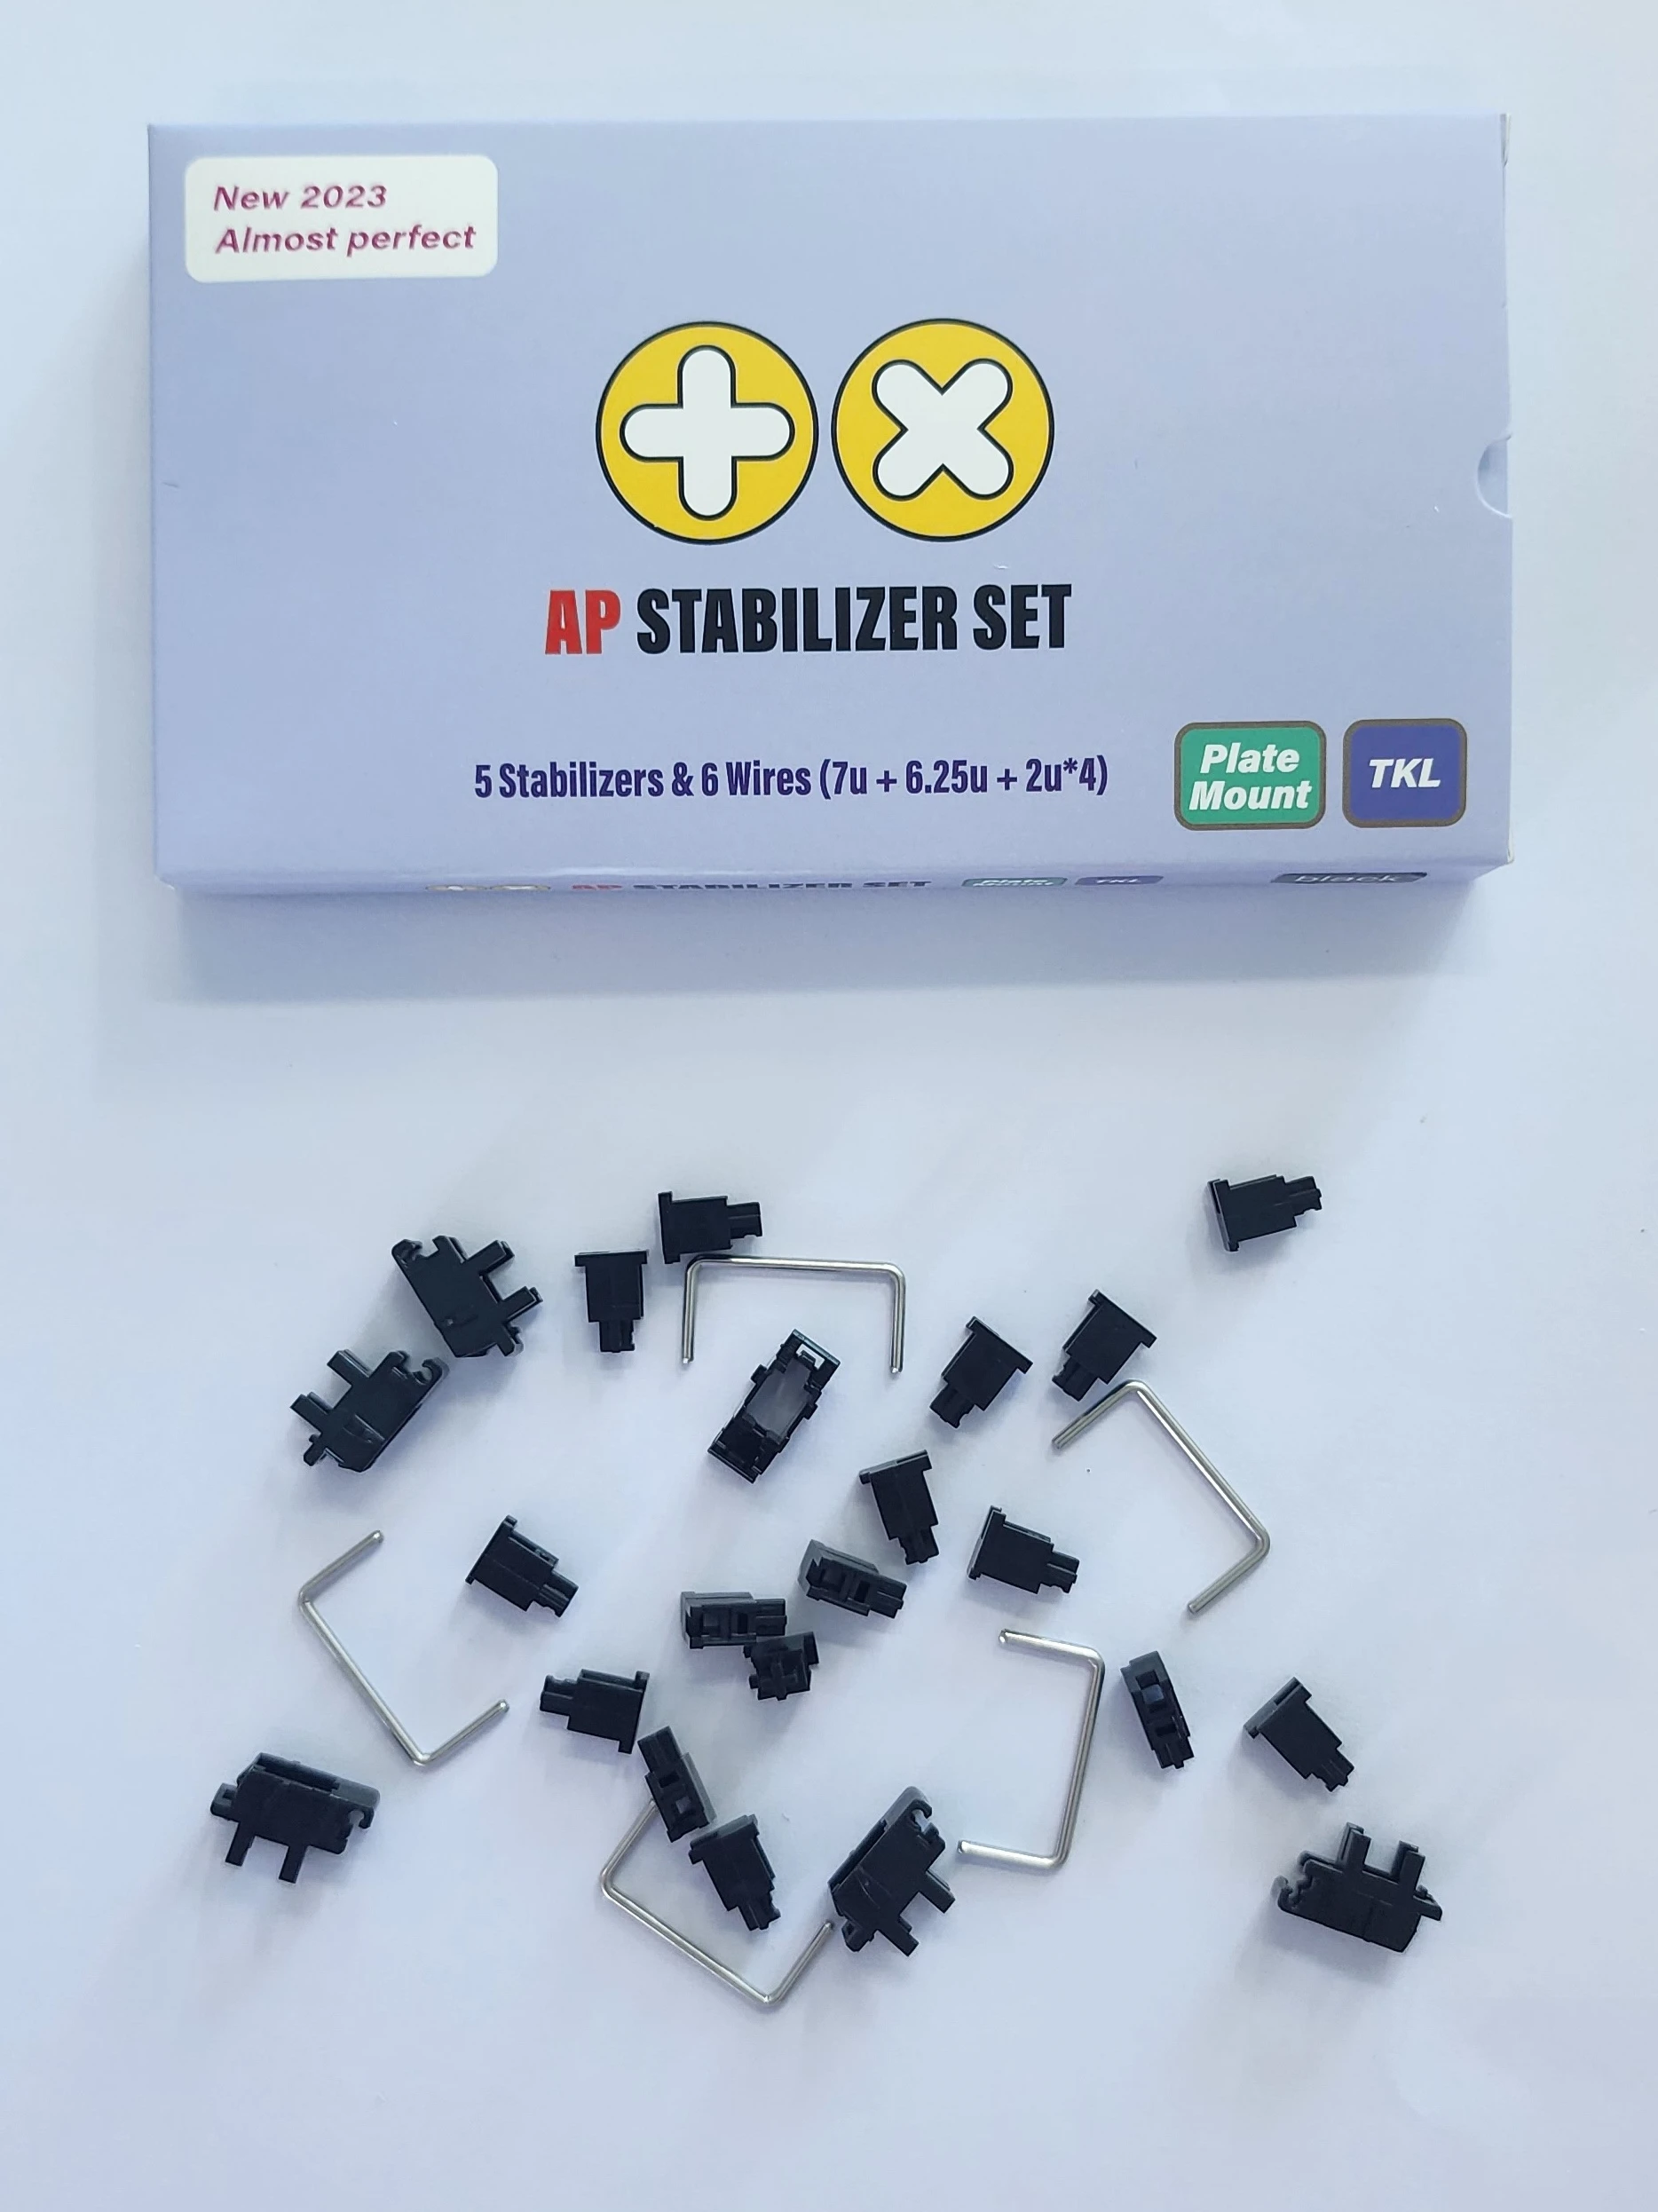 Стабилизаторы TX, стабилизаторы с креплением на панели AP для TKL макет 7U 6.25U, стабилизаторы с креплением на механическую клавиатуру